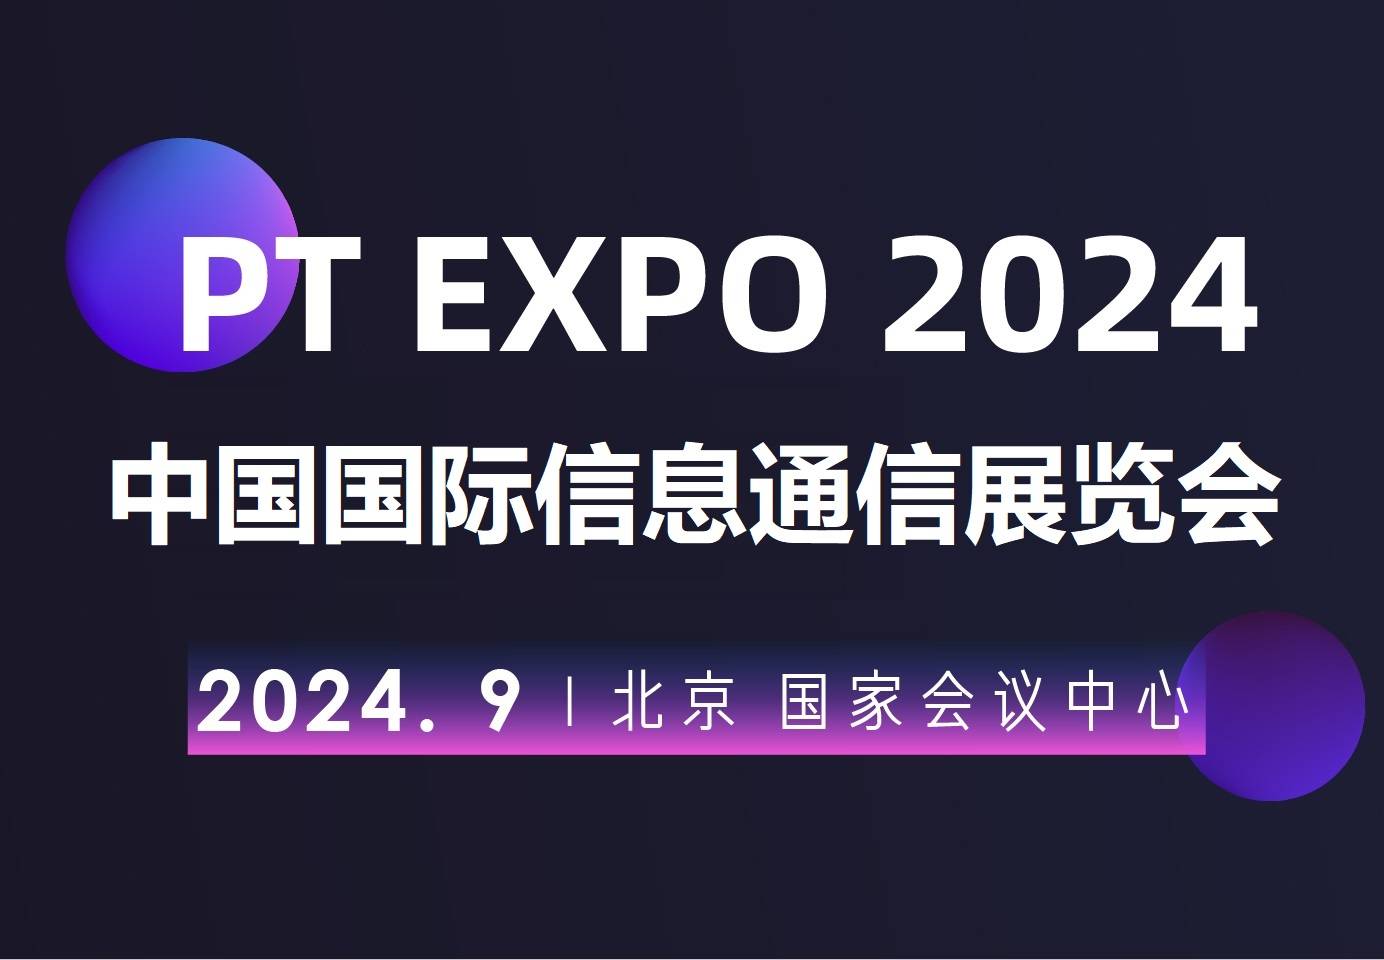 华为、中兴、联通、移动、电信企聚“2024北京国际信息通信展会”